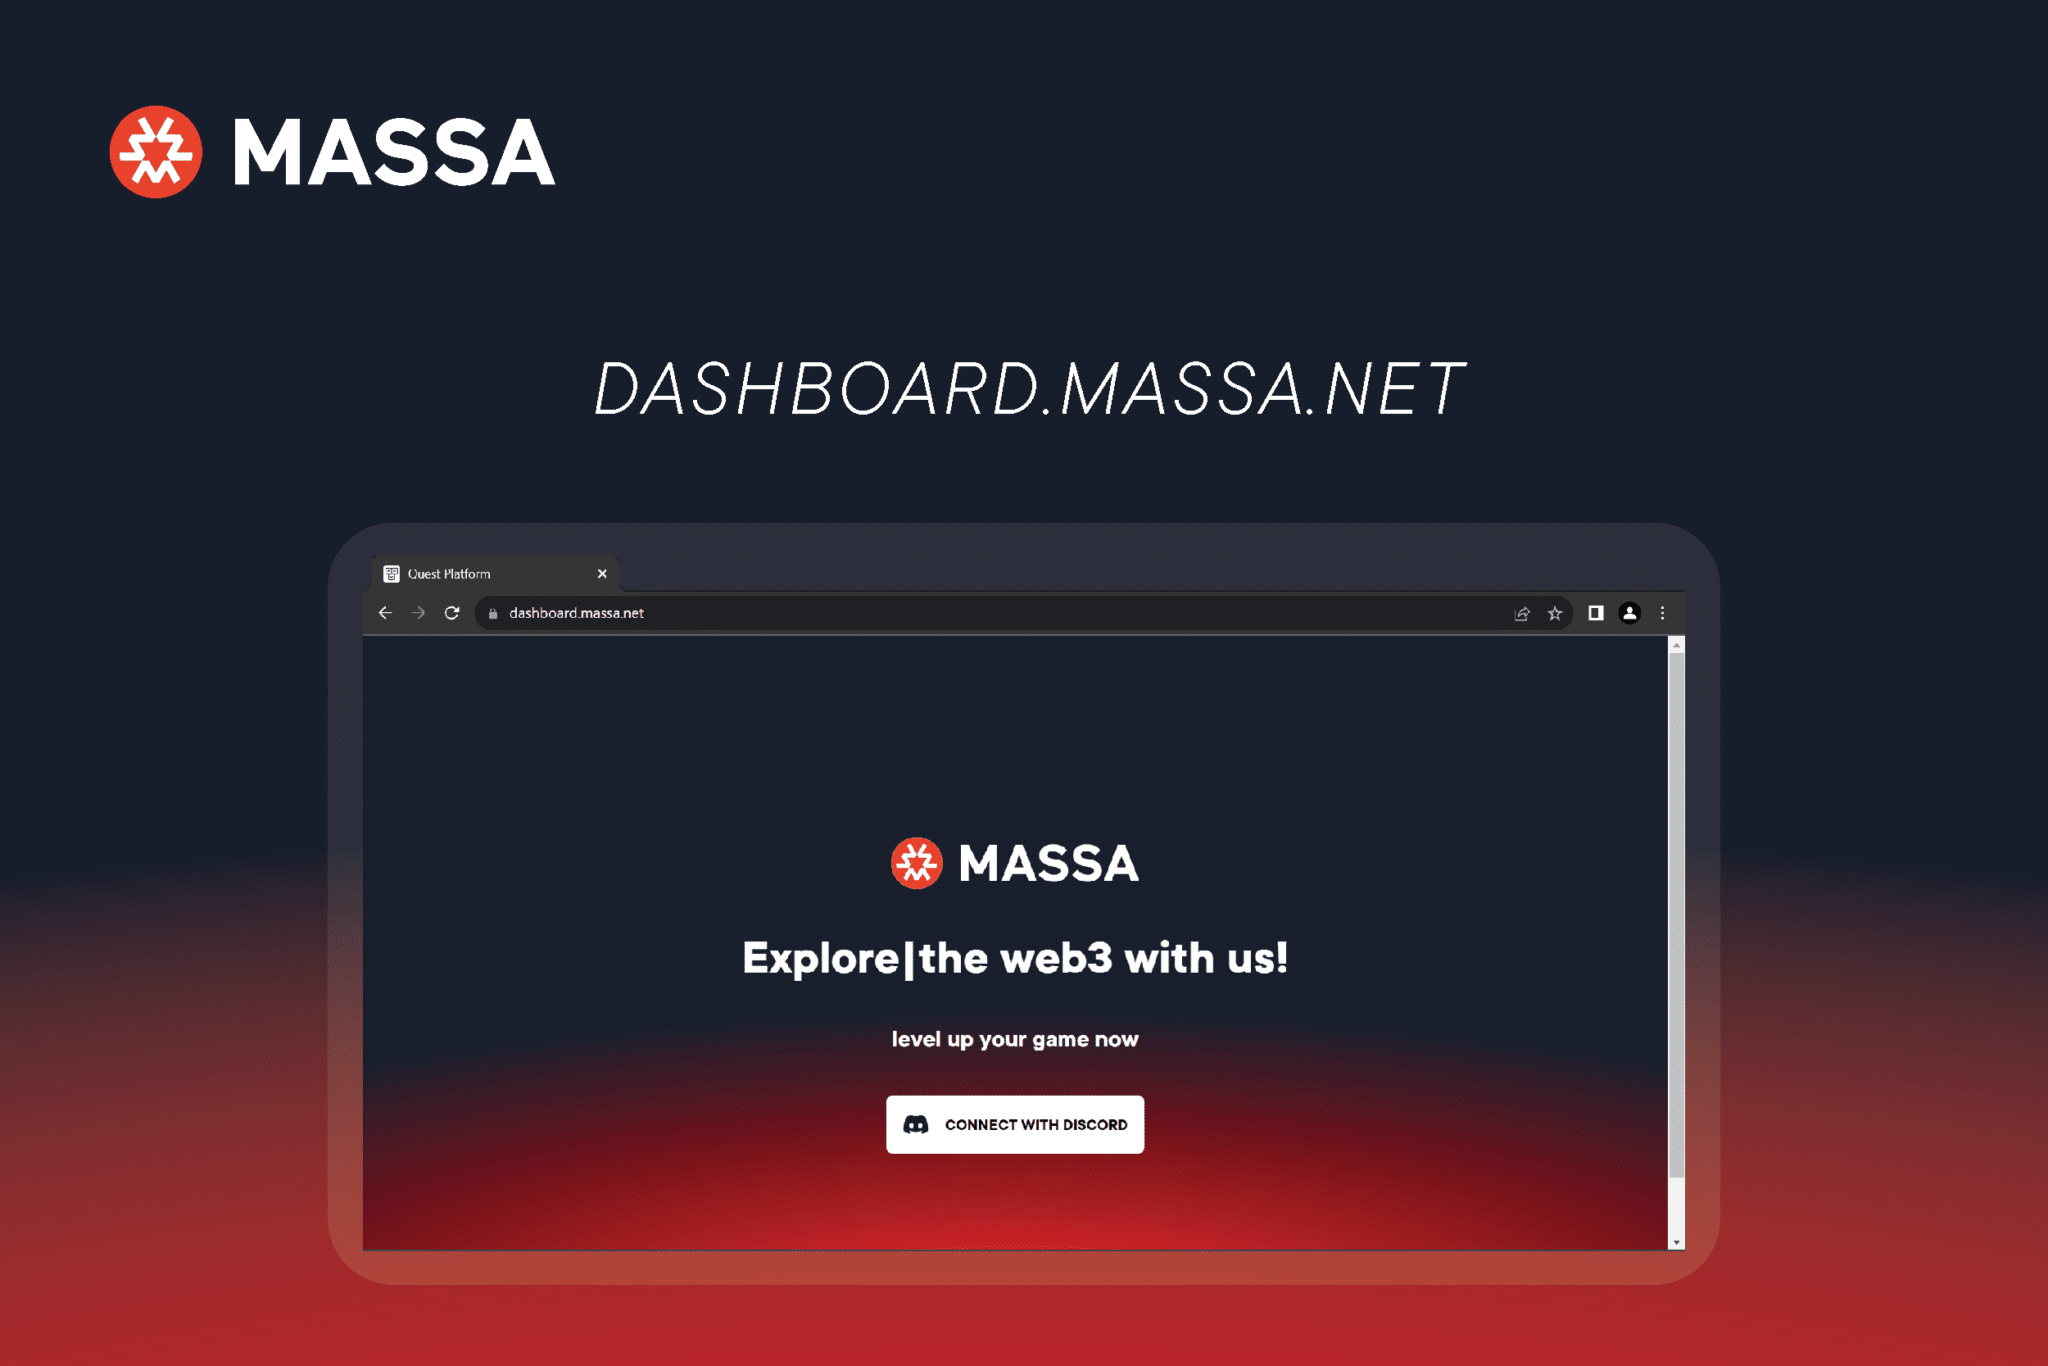 Explore web3 with the massa quest dashboard